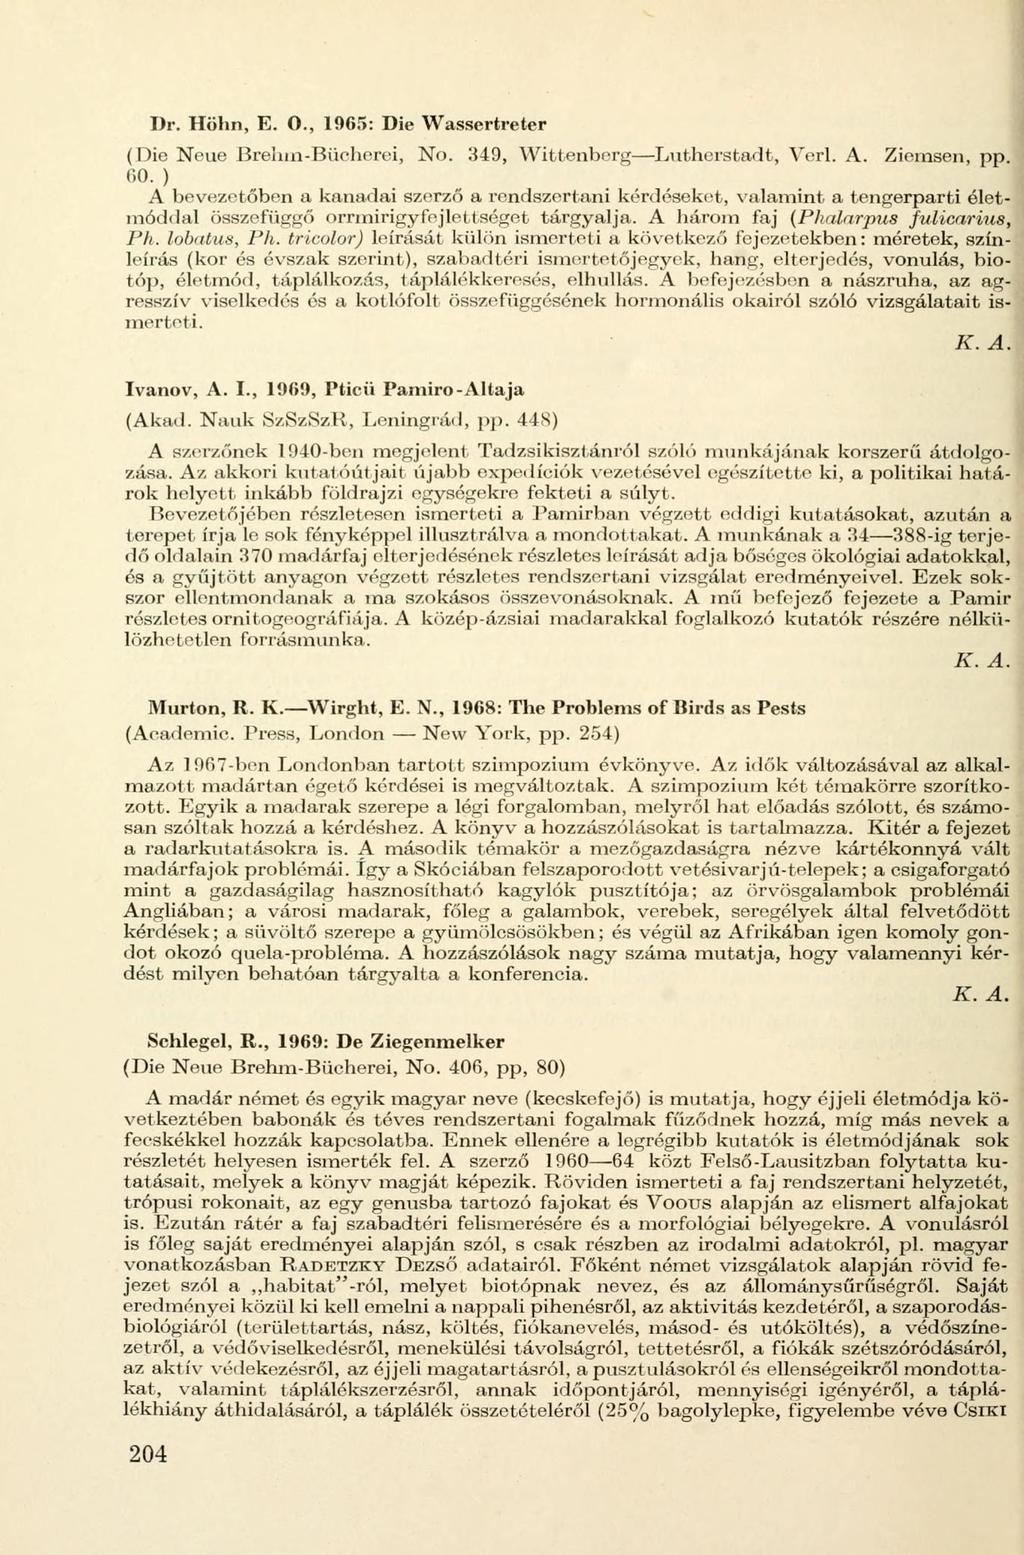 Dr. Höhn, E. O., 1965: Die Wassertreter (Die Neue Brehm-Bücherei, No. 349, Wittenberg Lutherstadt, Verl. A. Ziemsen, pp. 60.